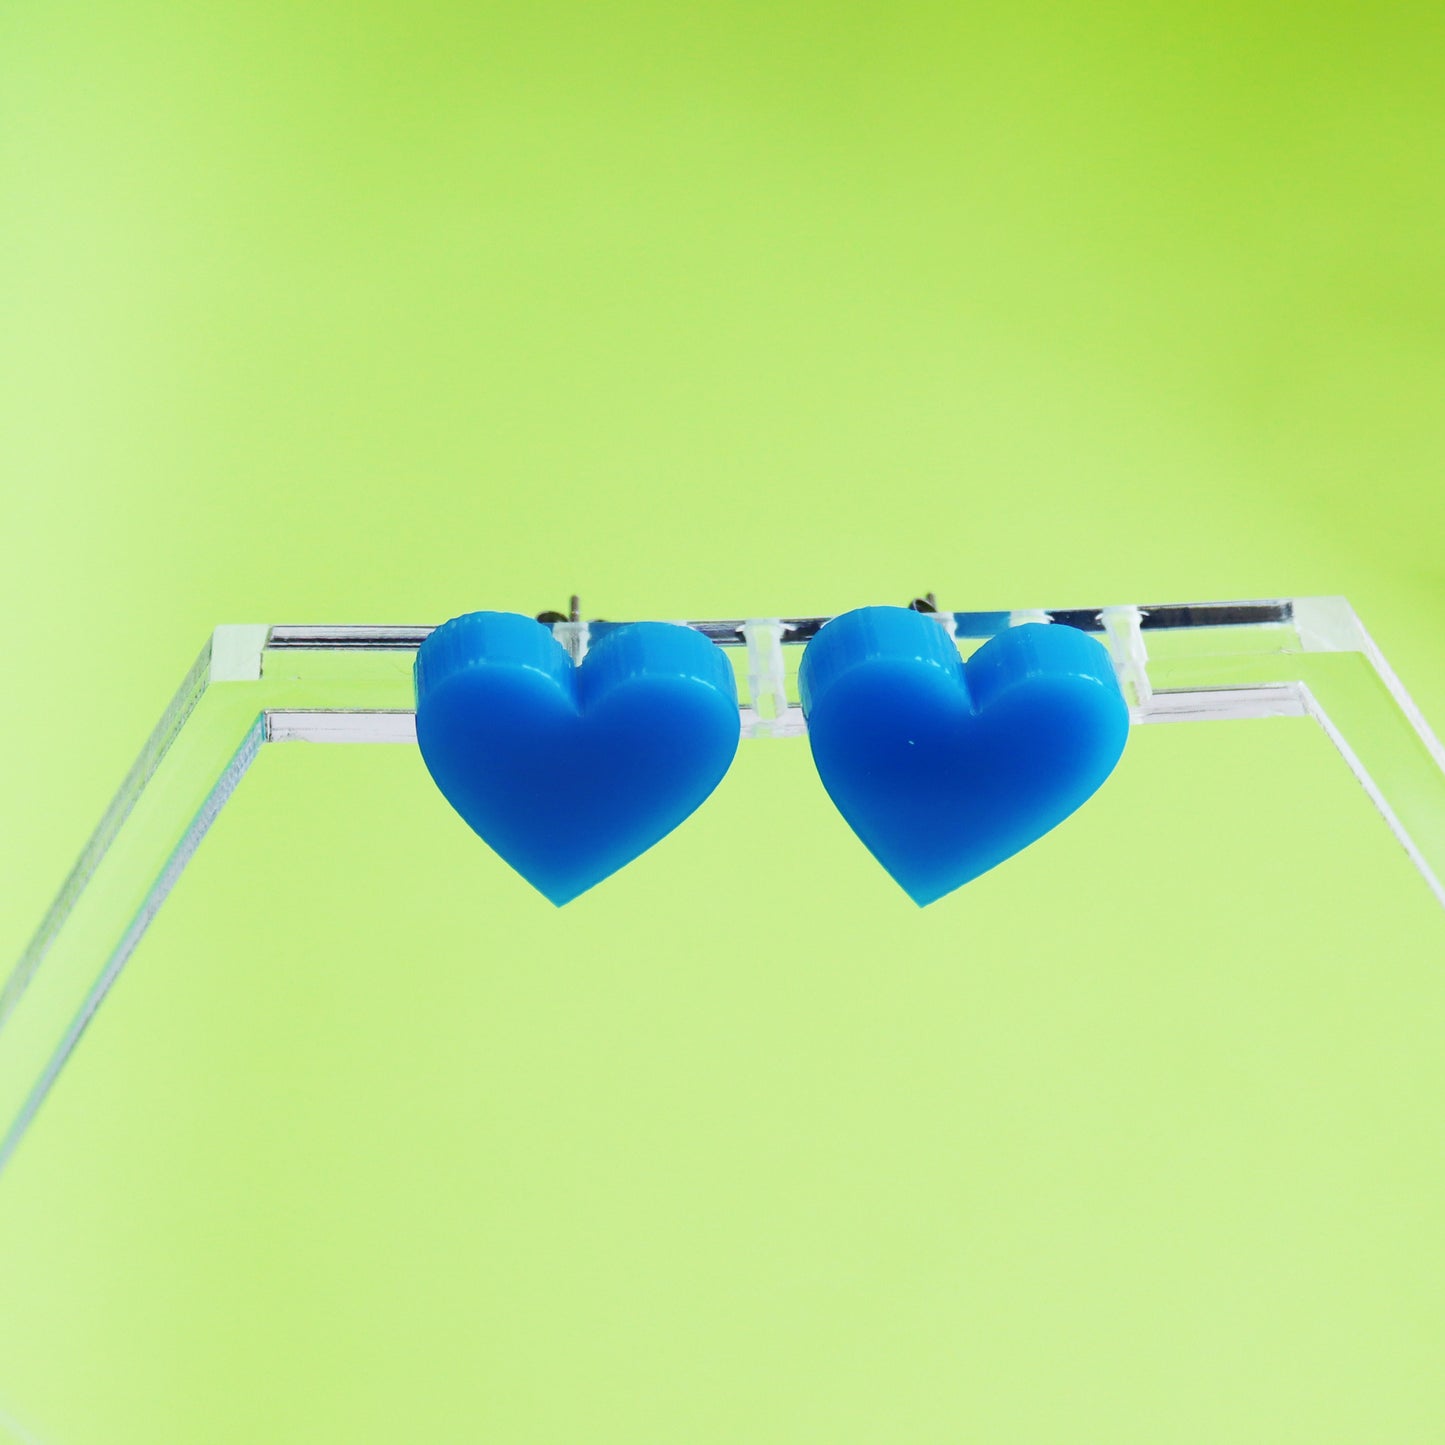 acrylic blue stud heart earrings shown on earring hanger